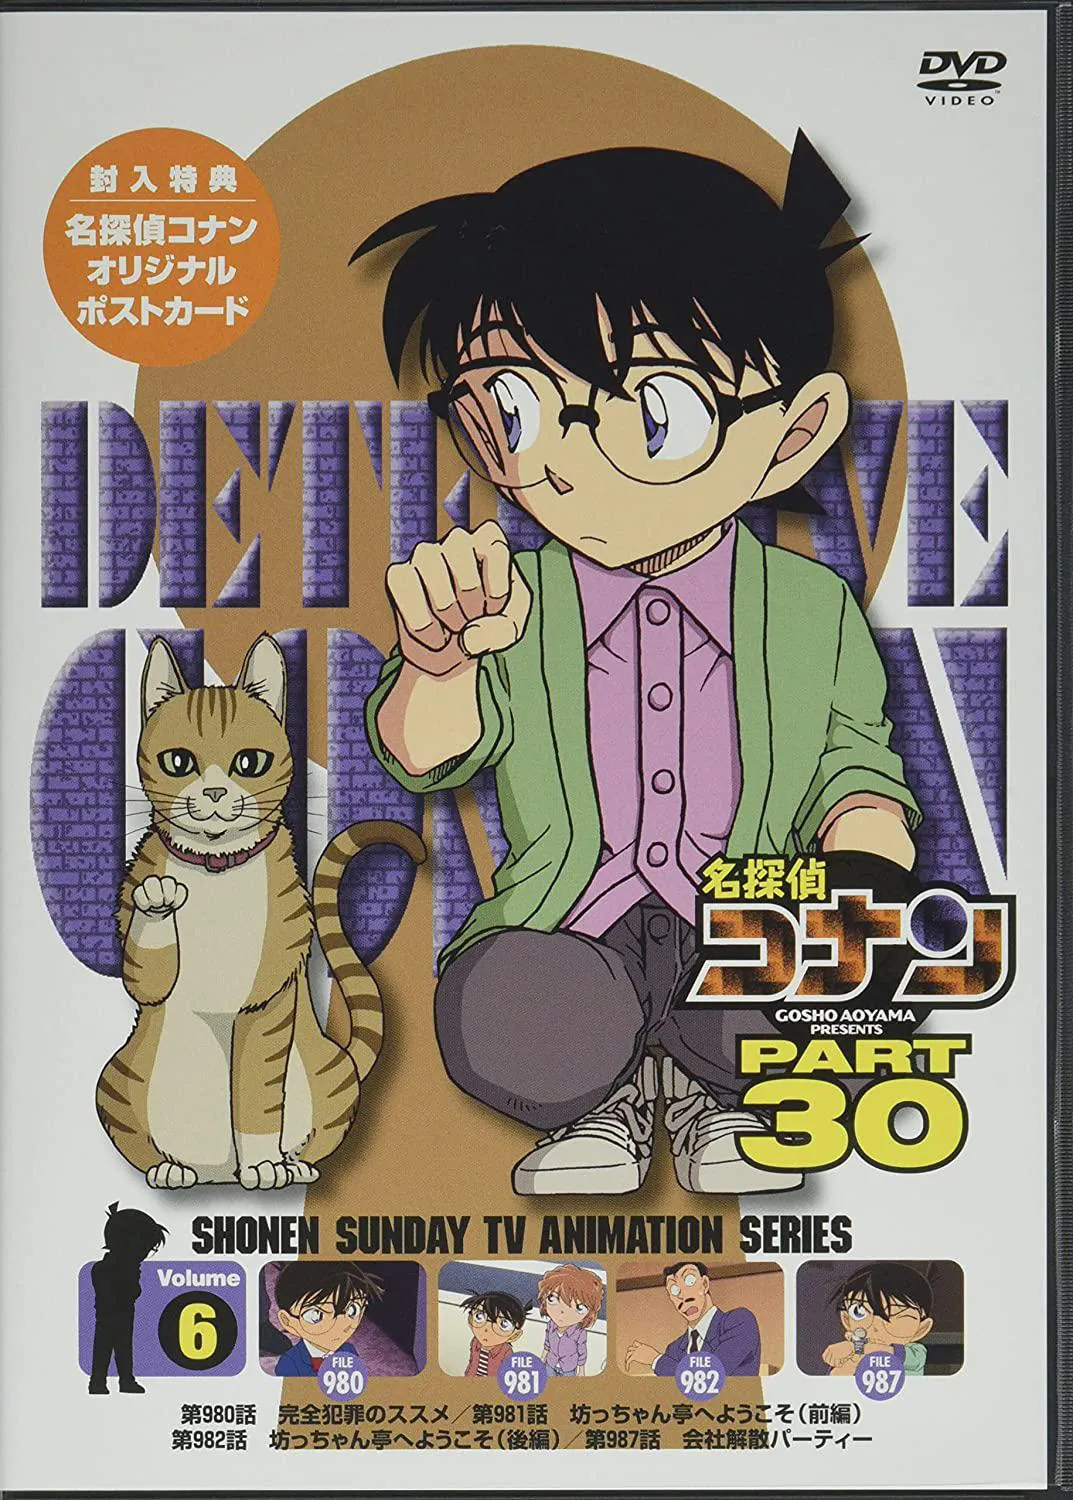 名探偵コナン PART30 Vol.6 [DVD]